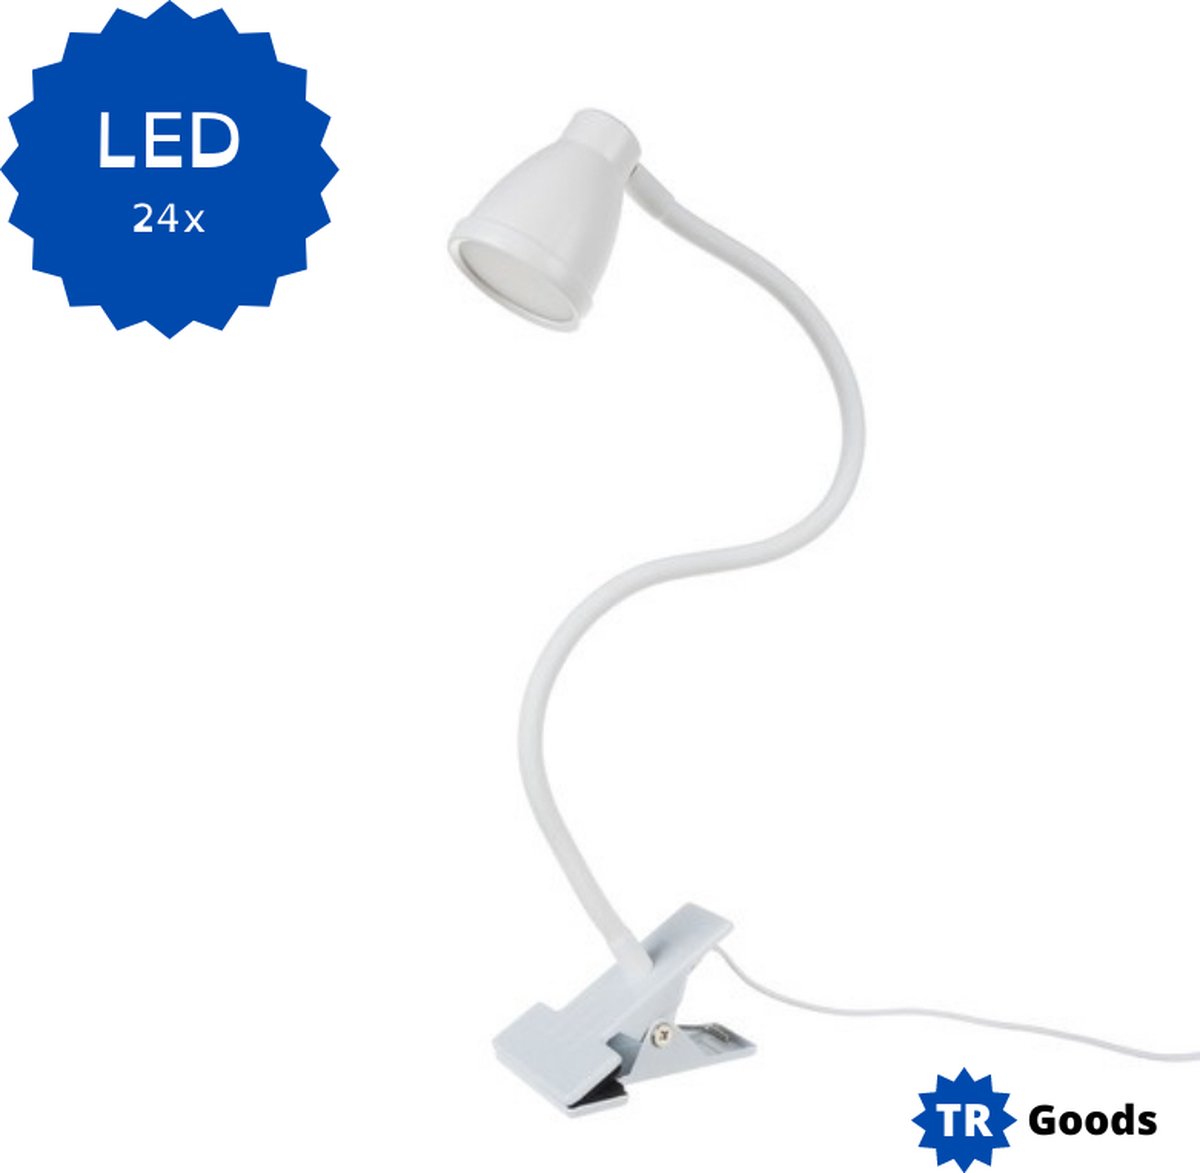 T.R. Goods - Bureaulamp LED (24x) - Dimmer - 3 Kleurstanden - Klem ook als Voet te gebruiken - Bureau Lamp - wit